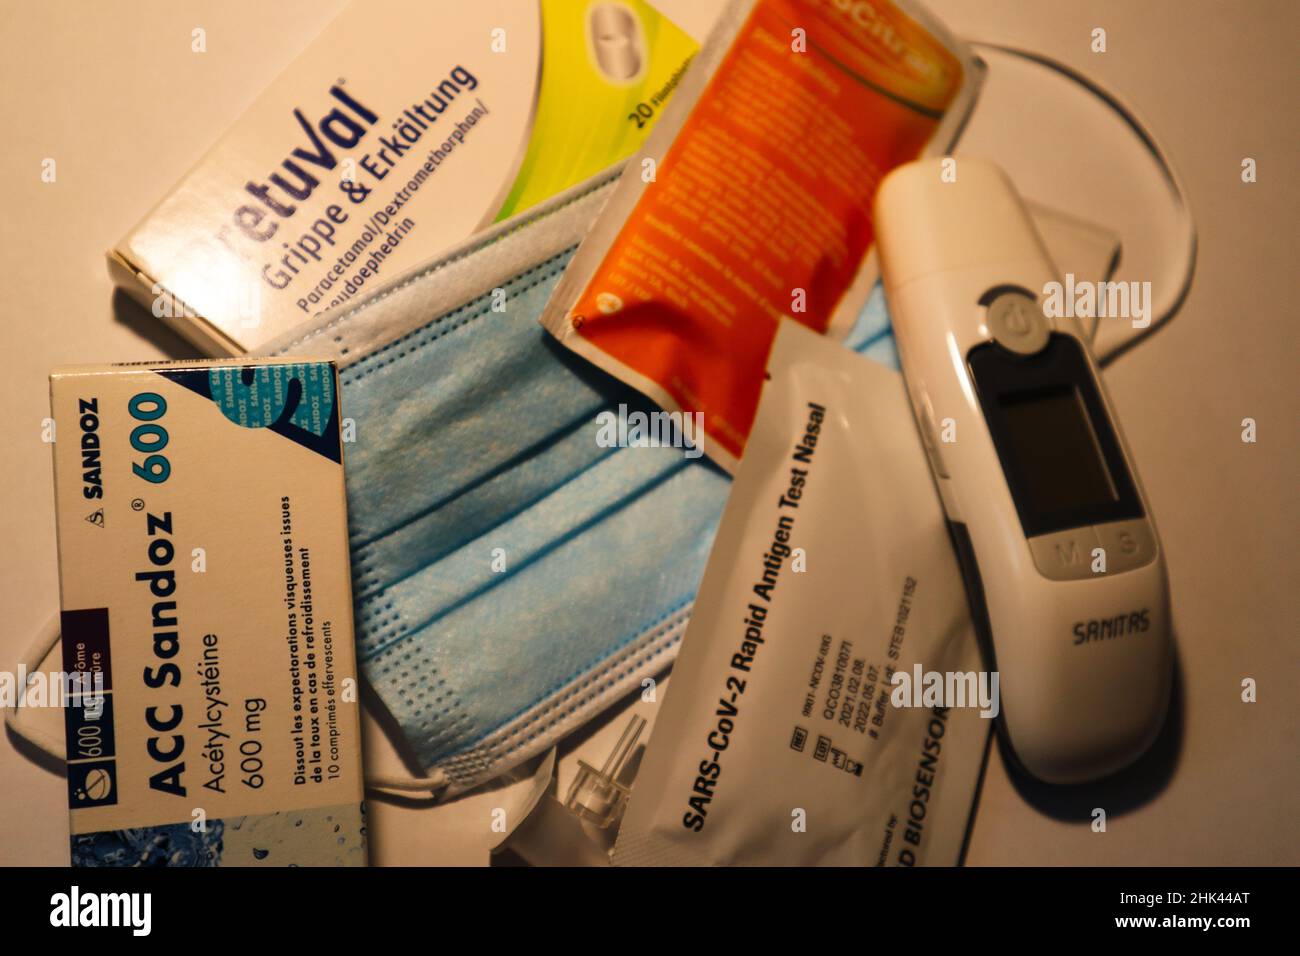 Berna, Svizzera, 05. Gennaio 2022: Maschera medica, termometro clinico e febbre, influenza e farmaci freddi. Foto Stock